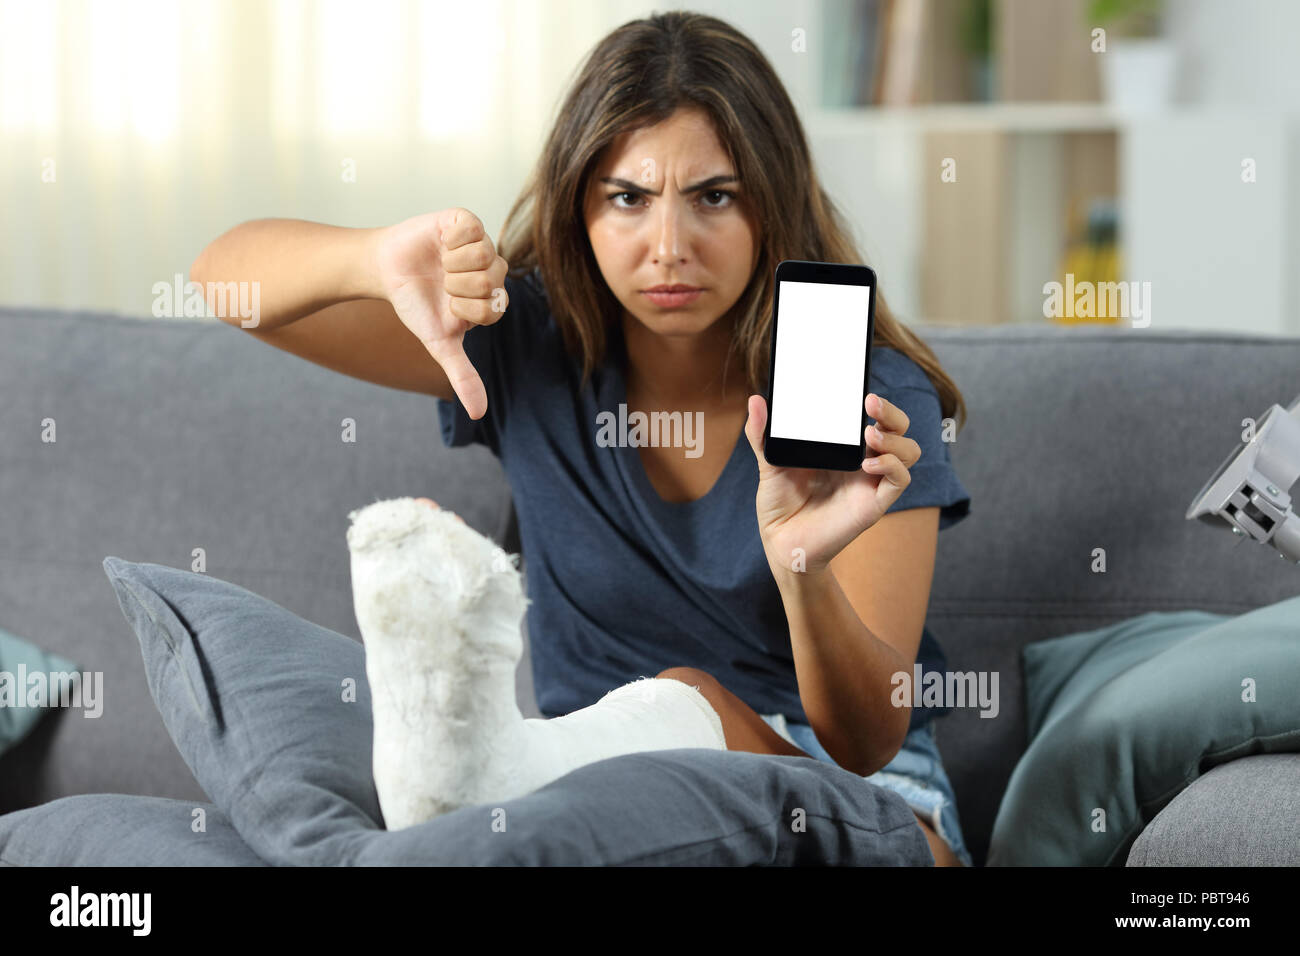 Ничем в телефоне сижу. Женщина сидит в телефоне. Сидит за телефоном. Девушка сидит на диване. Злая девушка с телефоном.